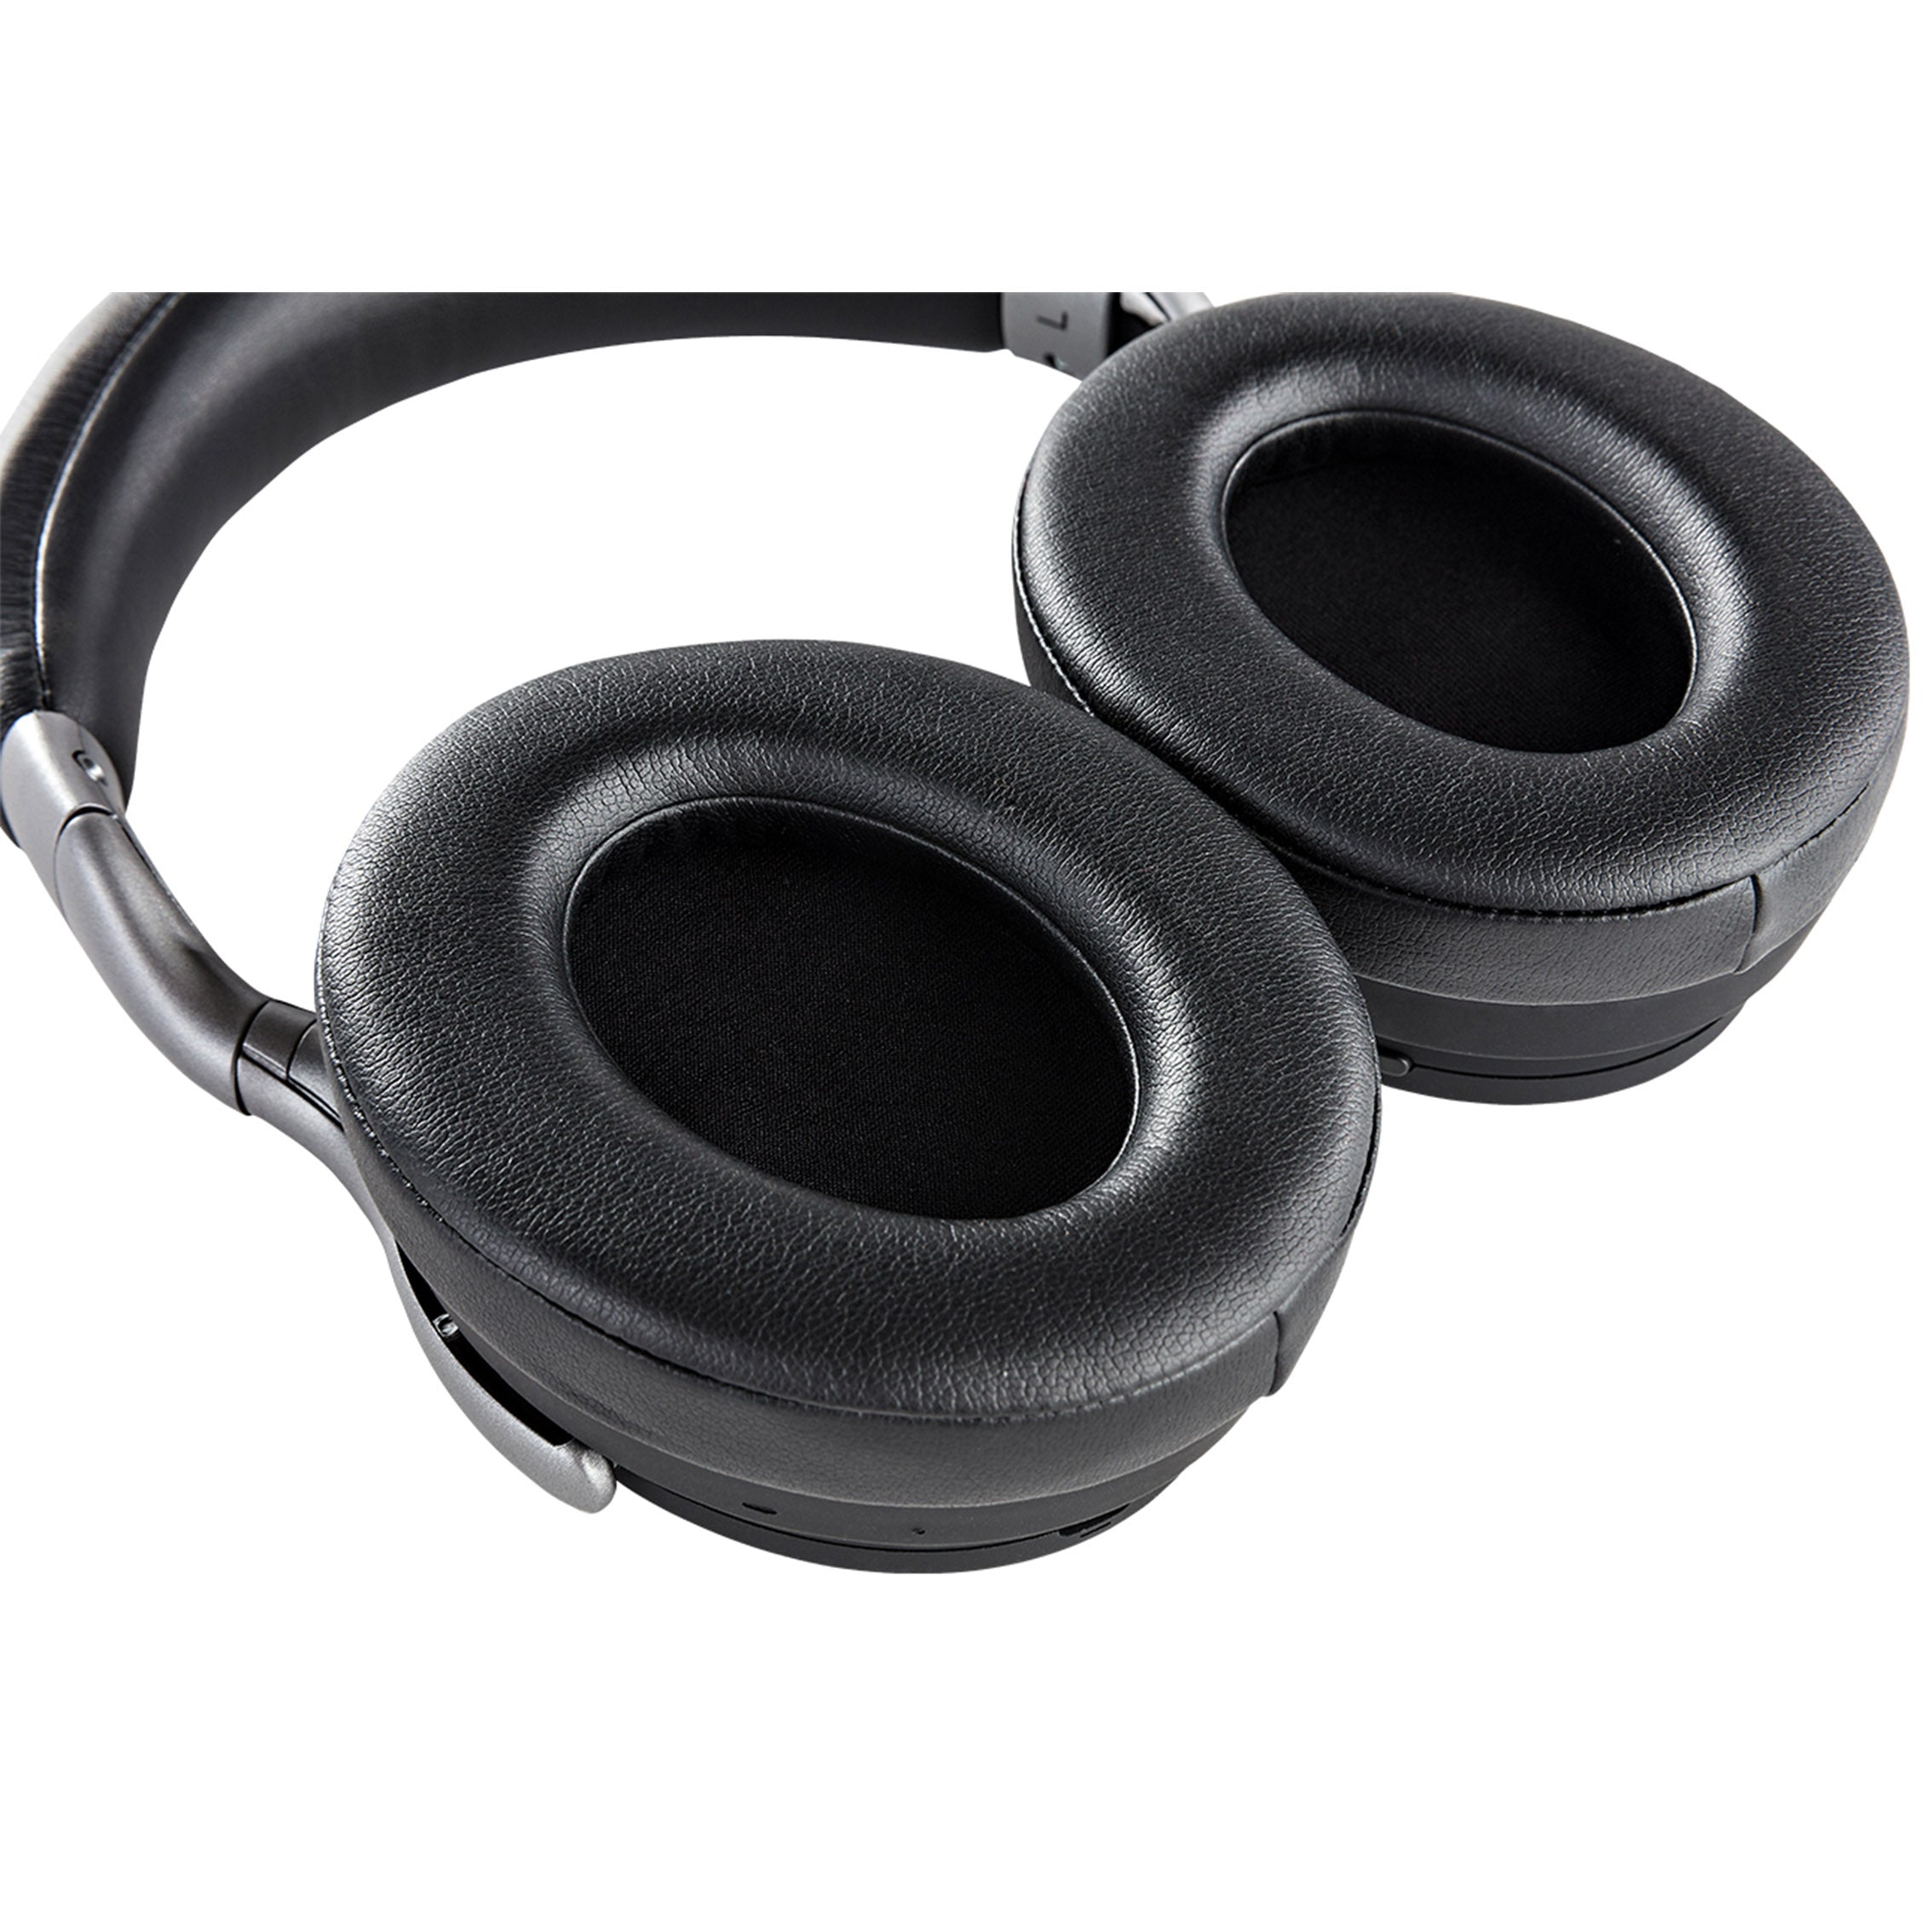 Denon AH-GC30 Wireless Noise-Canceling Over-Ear Headphones (Each)